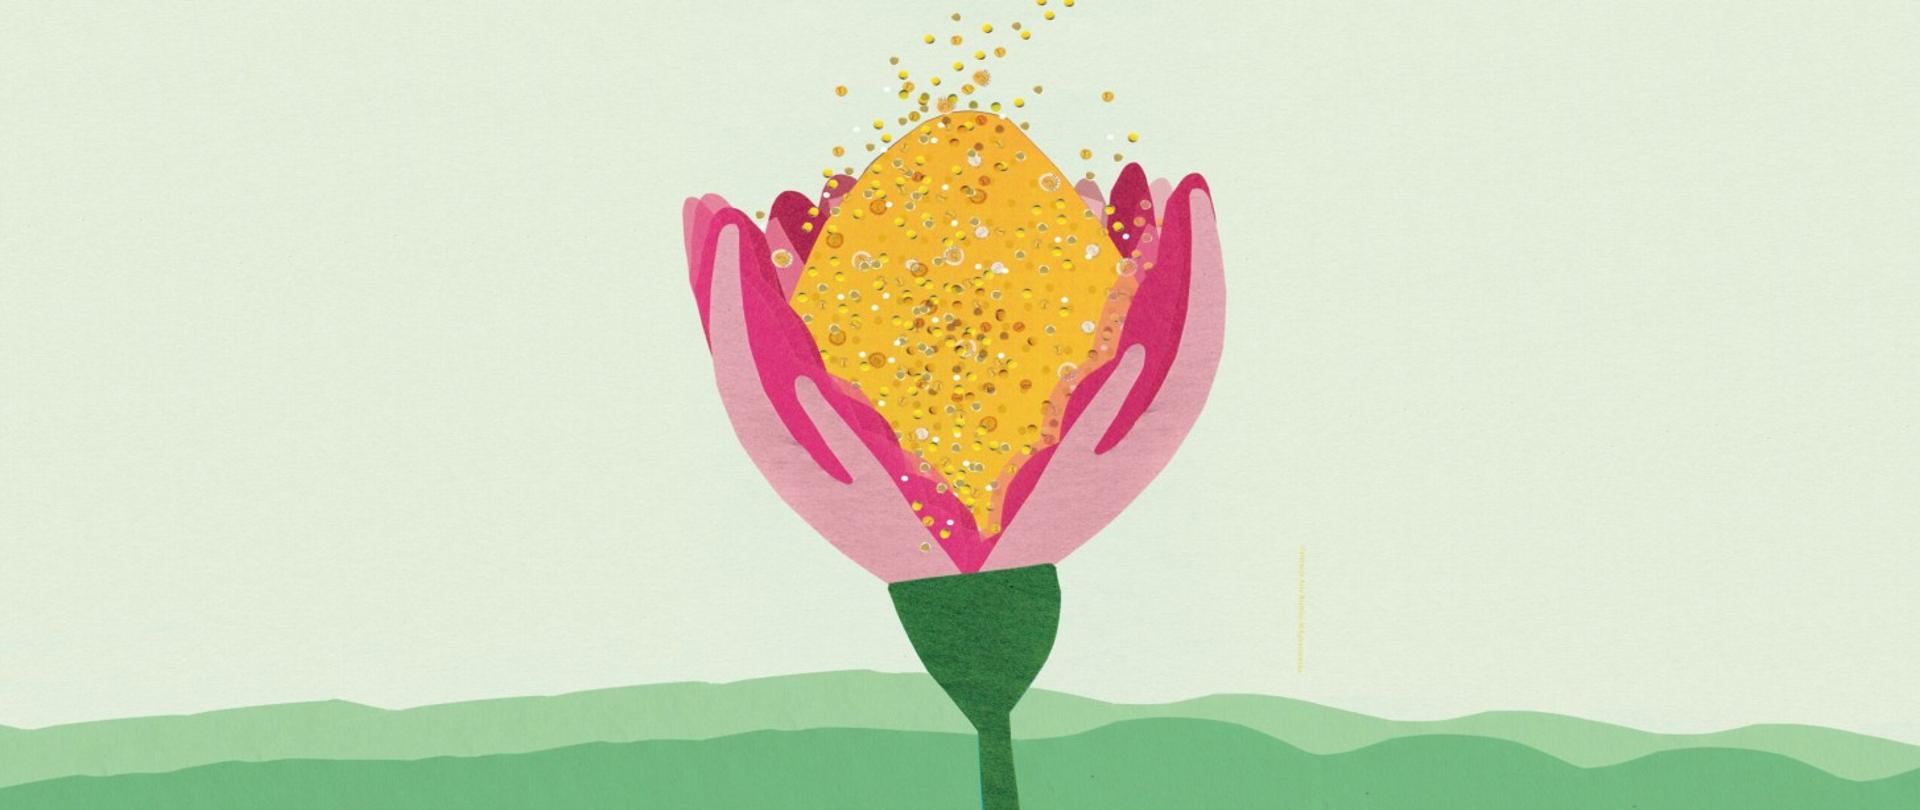 zdjęcie przedstawia umieszczony centralnie rozwarty pąk czerwonego tulipana na tle zielonej łąki i nieba do którego wpadają złote, drobne monety